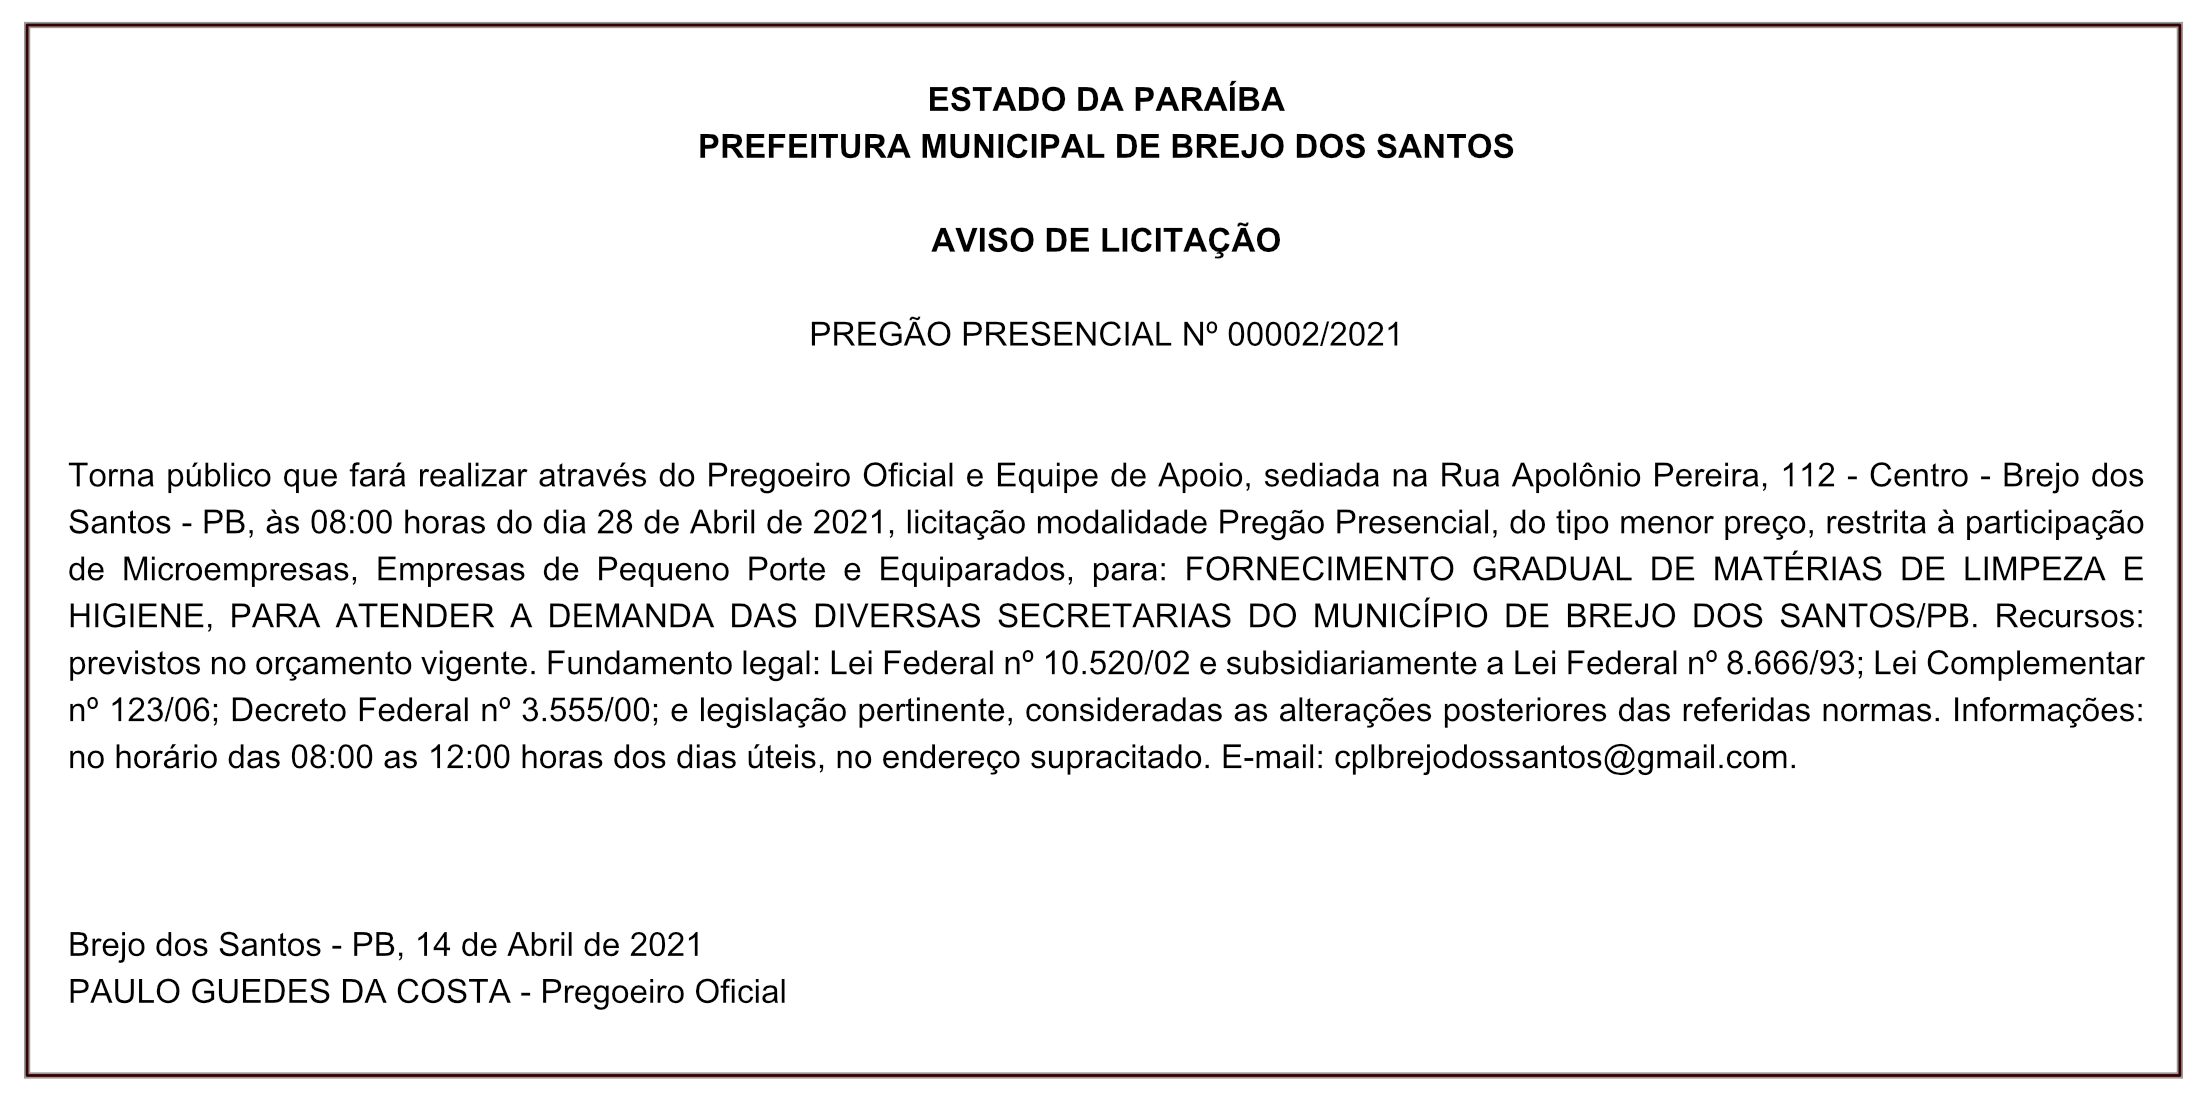 PREFEITURA MUNICIPAL DE BREJO DOS SANTOS -AVISO DE LICITAÇÃO – PREGÃO PRESENCIAL Nº 00002/2021